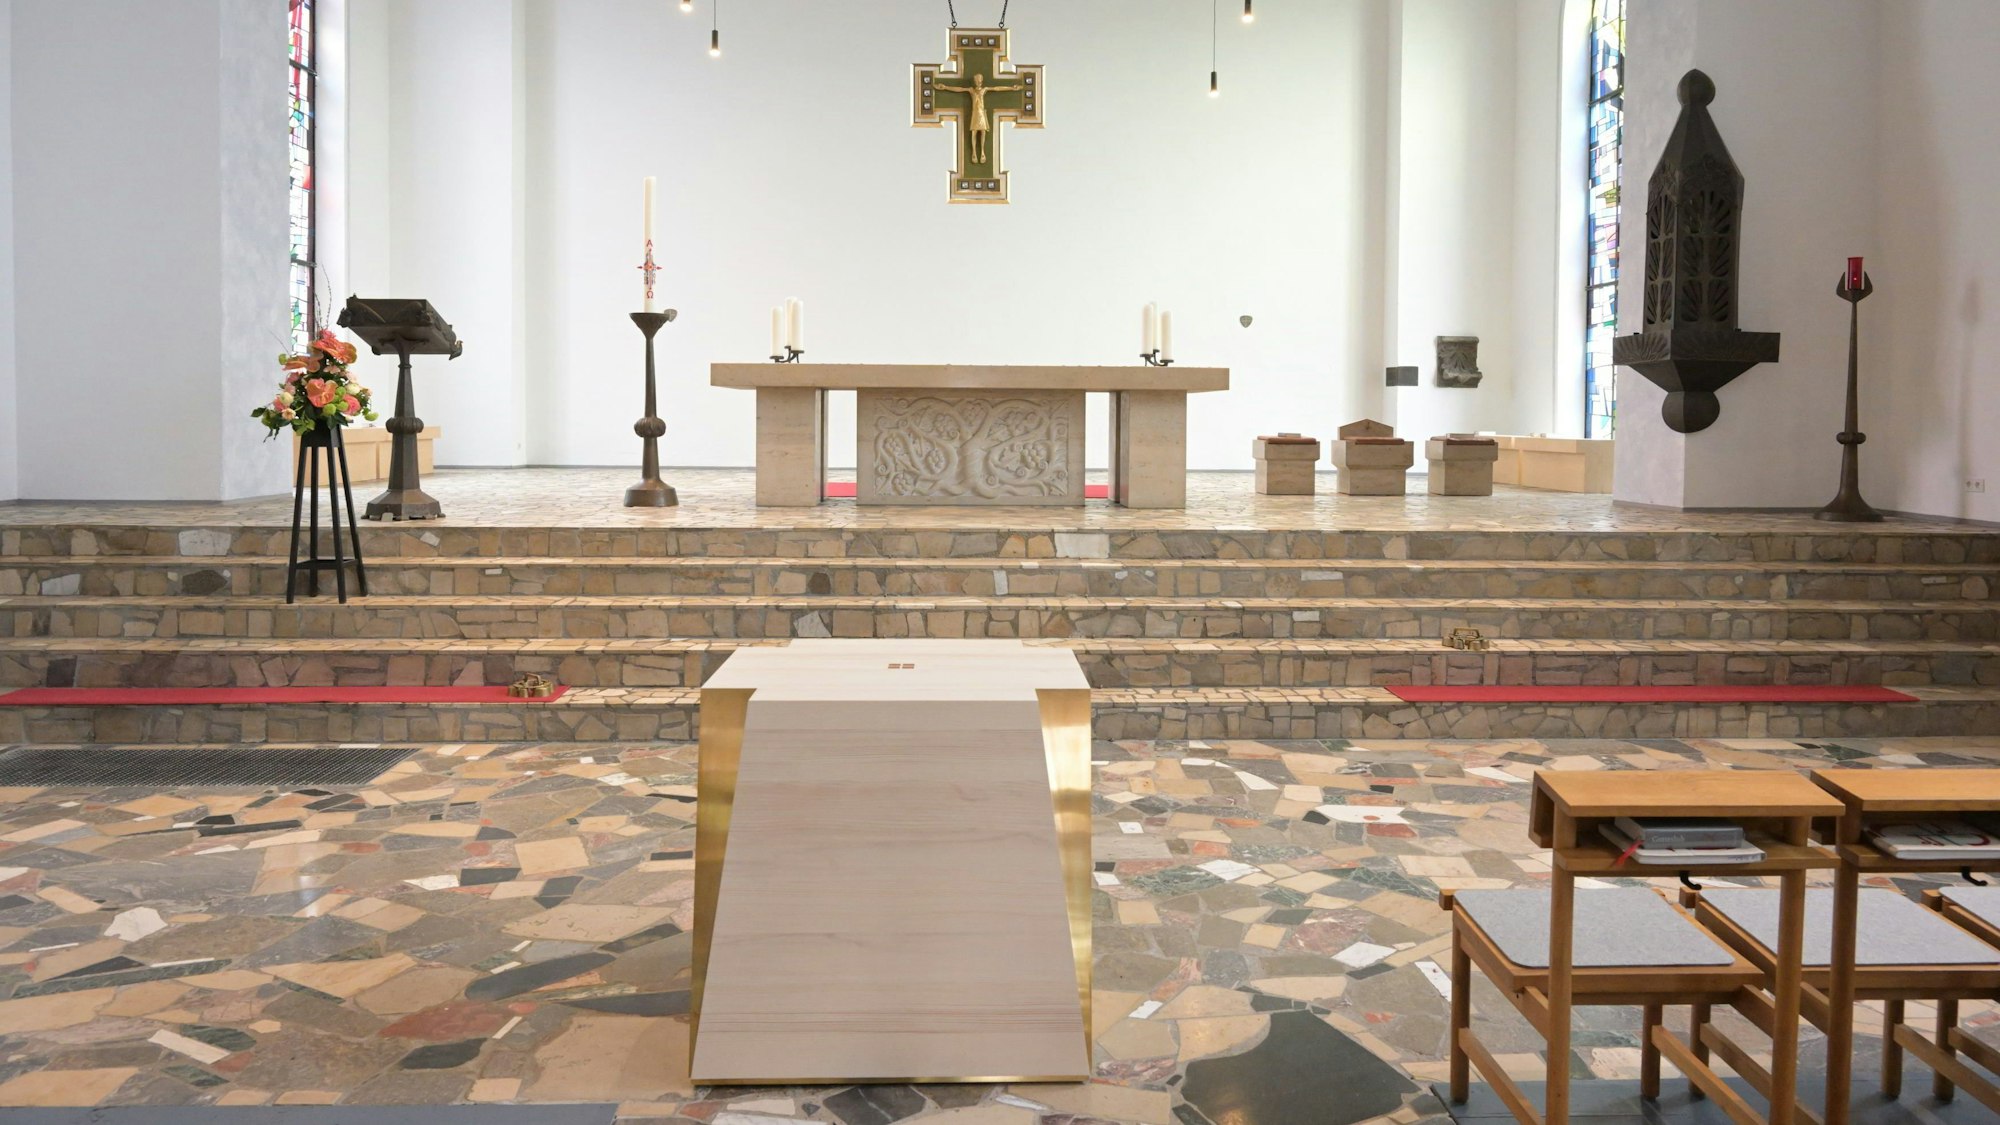 Ein großer Steinaltar in einer Kirche, unterhalb der mobile Nebenaltar aus Holz und Messing.